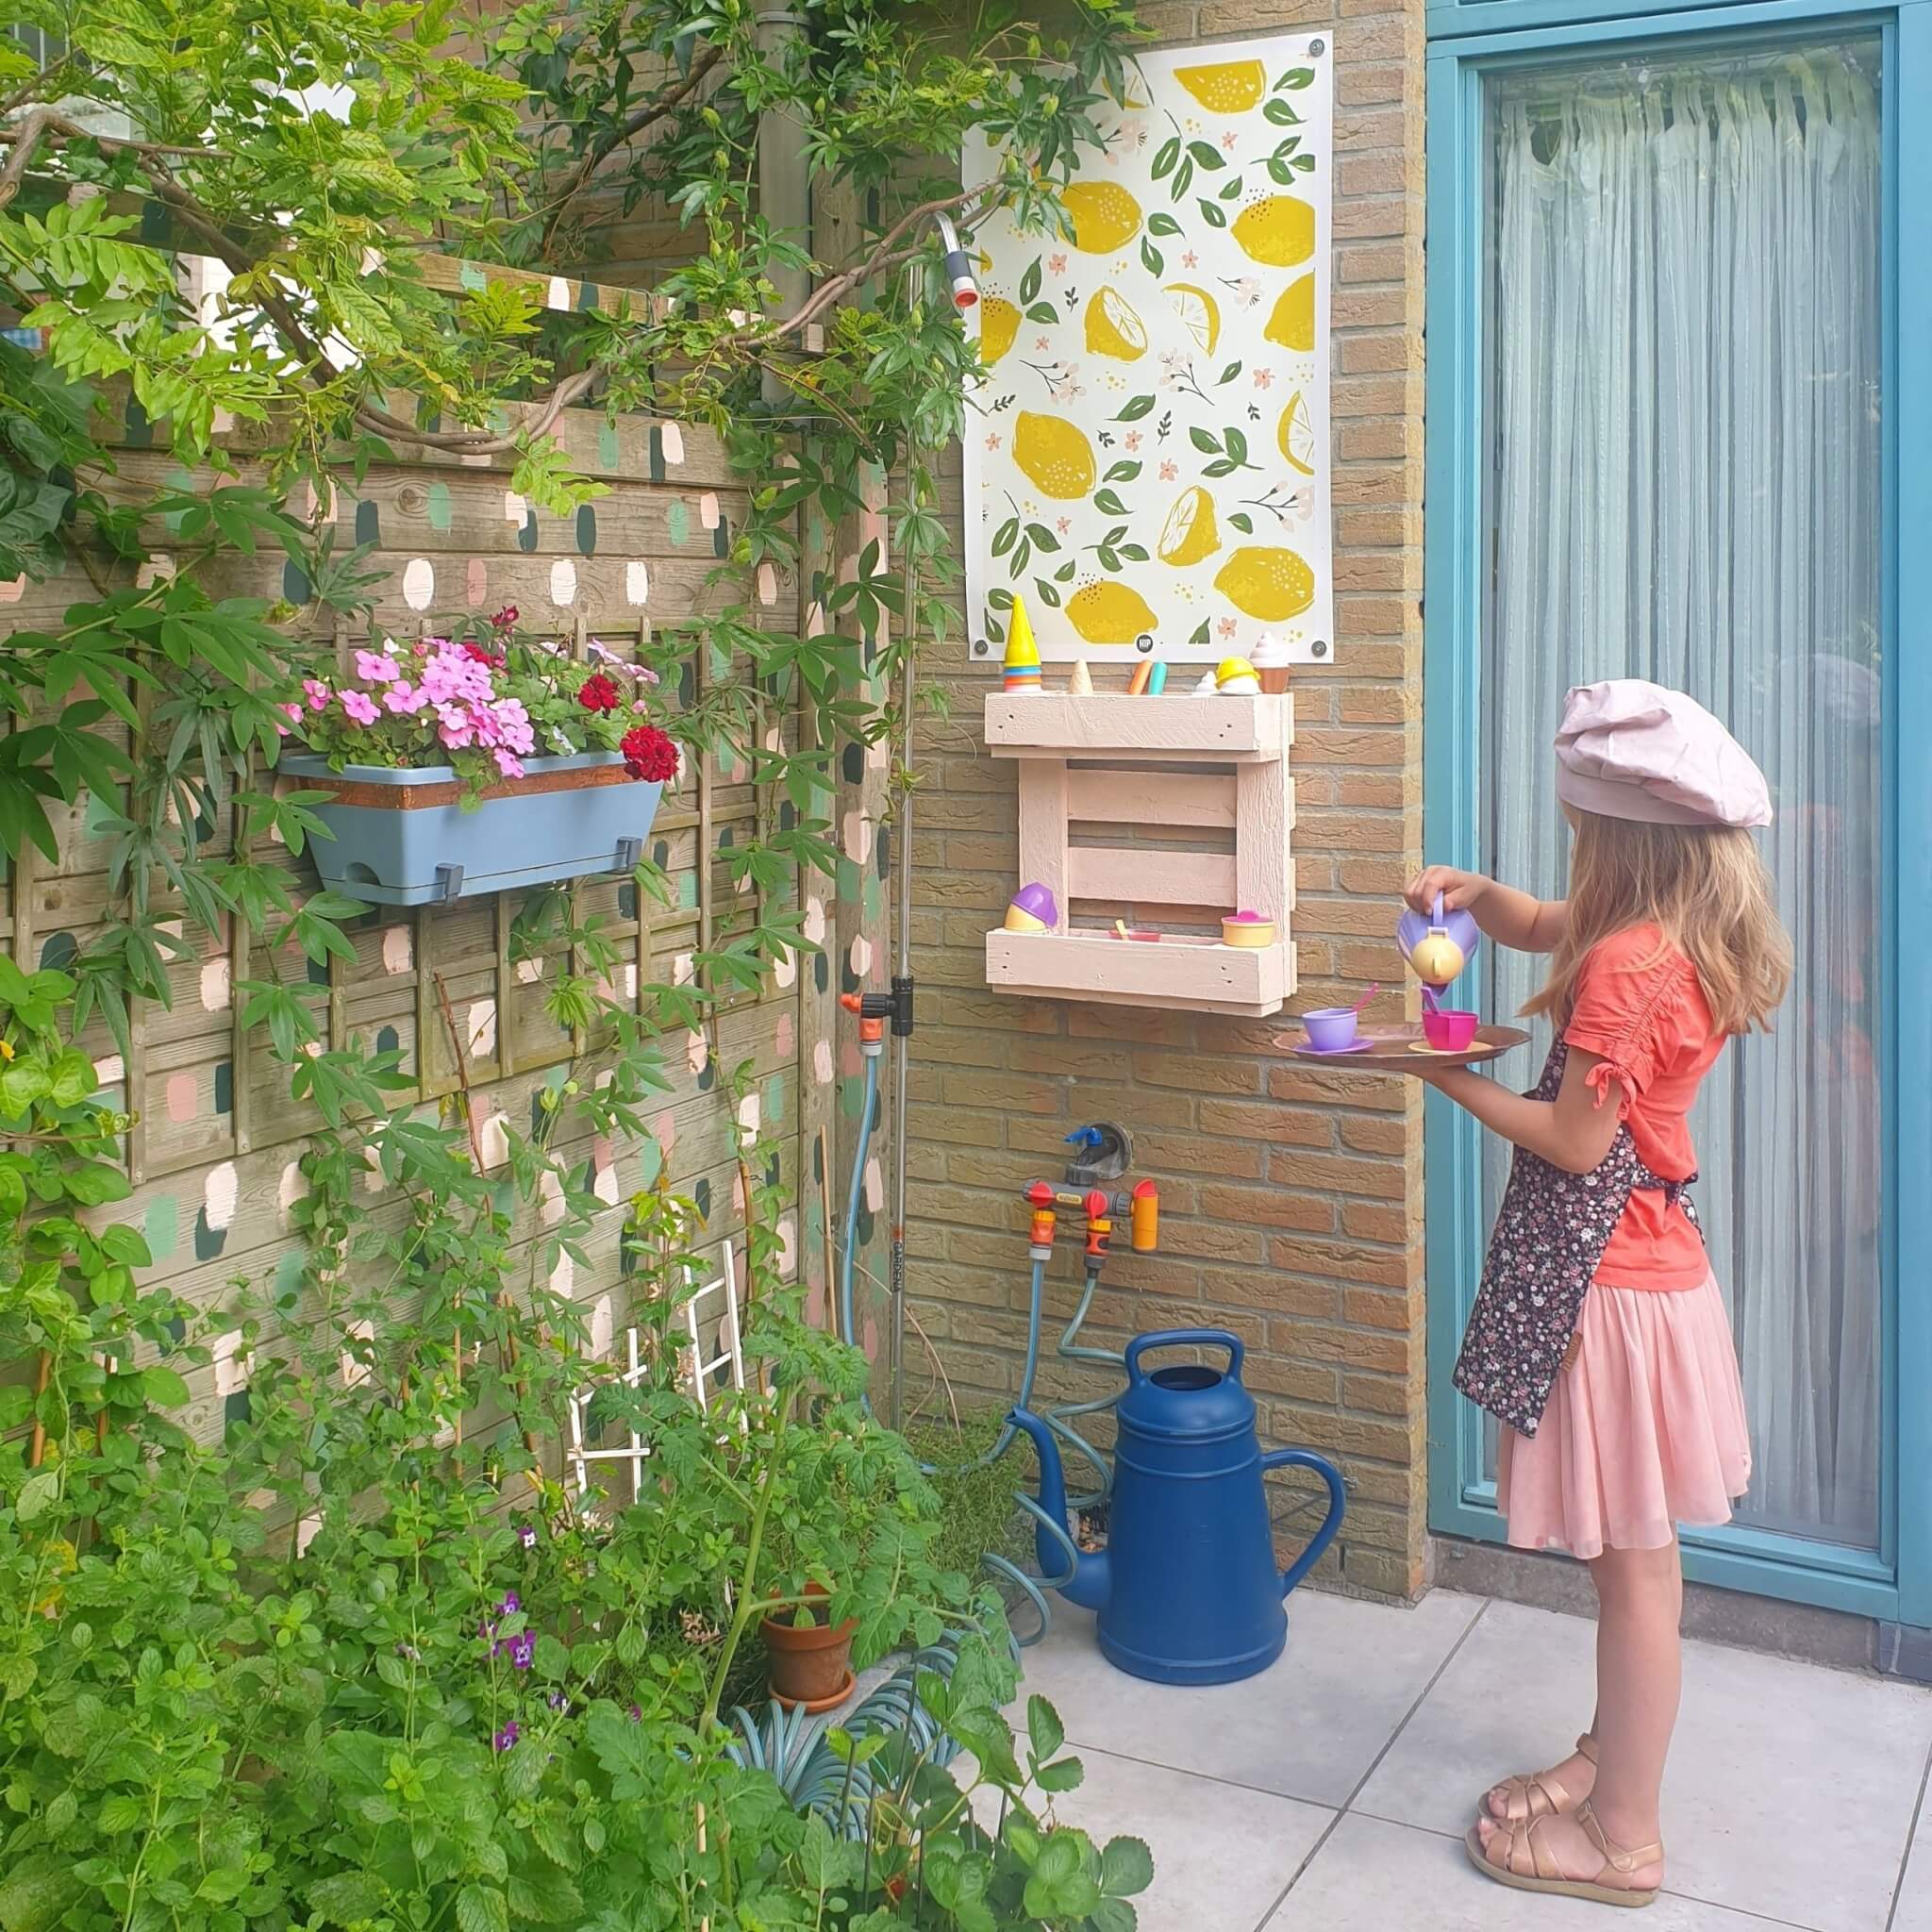 Ideeën voor een kinderkeuken: zelf maken, opknappen of kopen. Zoals een kinderkeukentje voor de tuin knutselen van een pallet. Leuke buitenspeelkeuken of kinderkeukentje voor buiten.